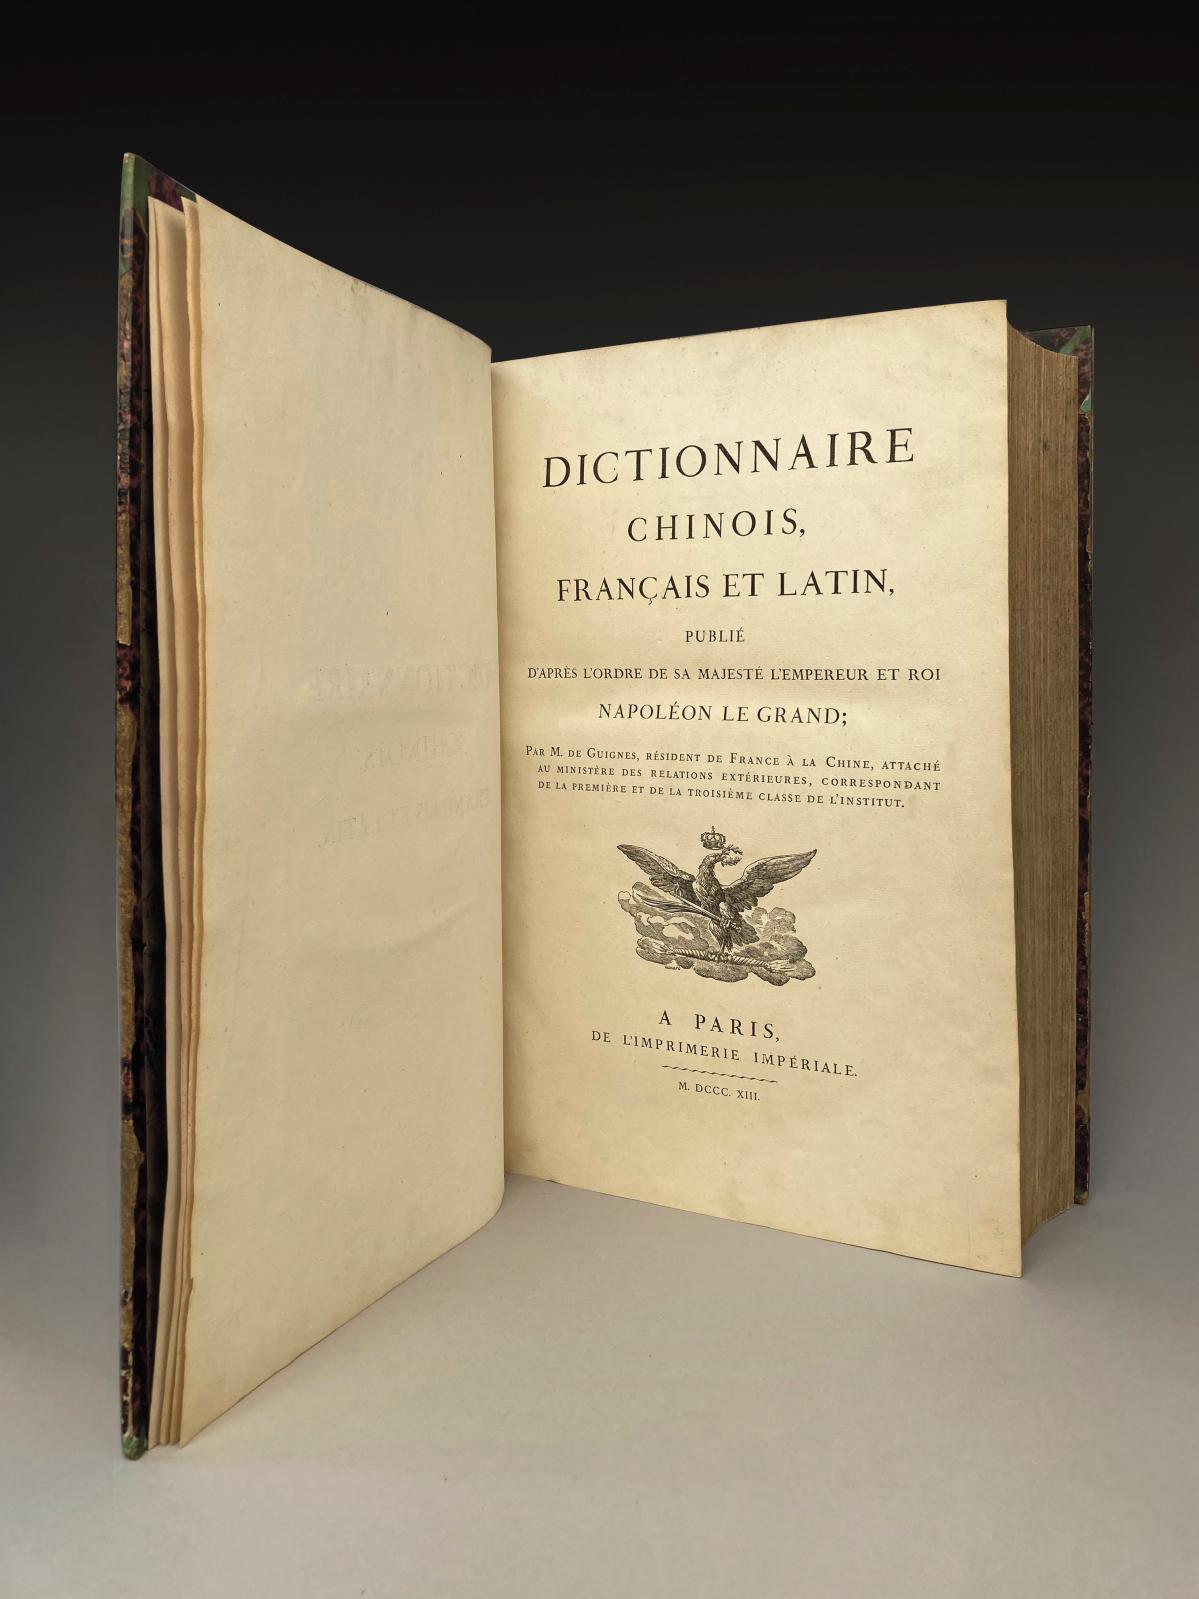 Le premier dictionnaire de chinois en France